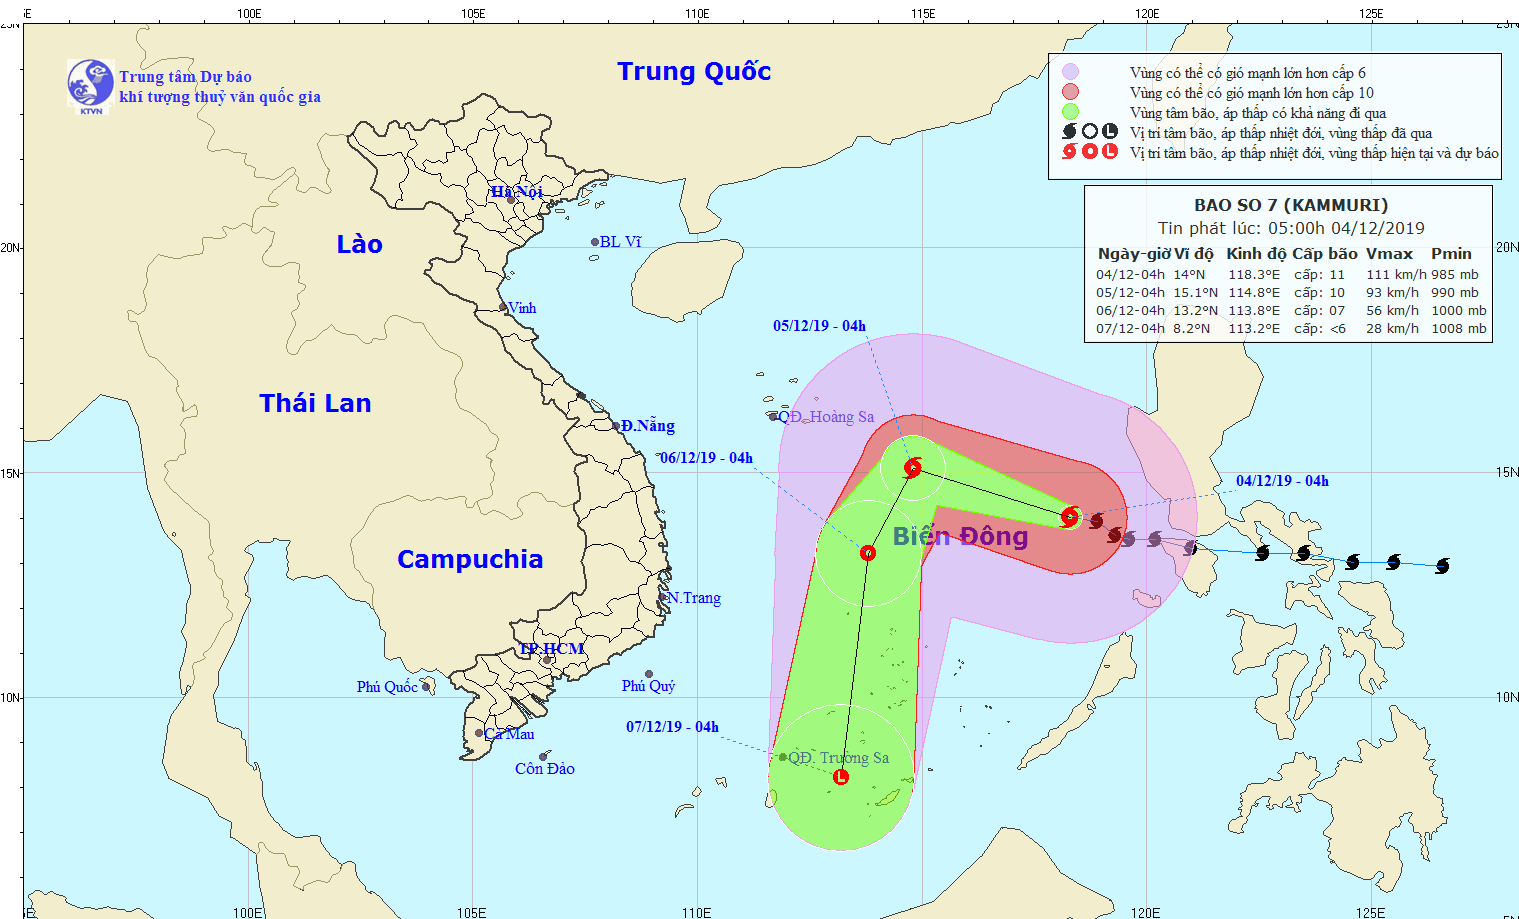 Bão số 7 giật cấp 14 đi vào Biển Đông: Dự báo, đường đi của bão sẽ bẻ hướng đột ngột  - Ảnh 2.